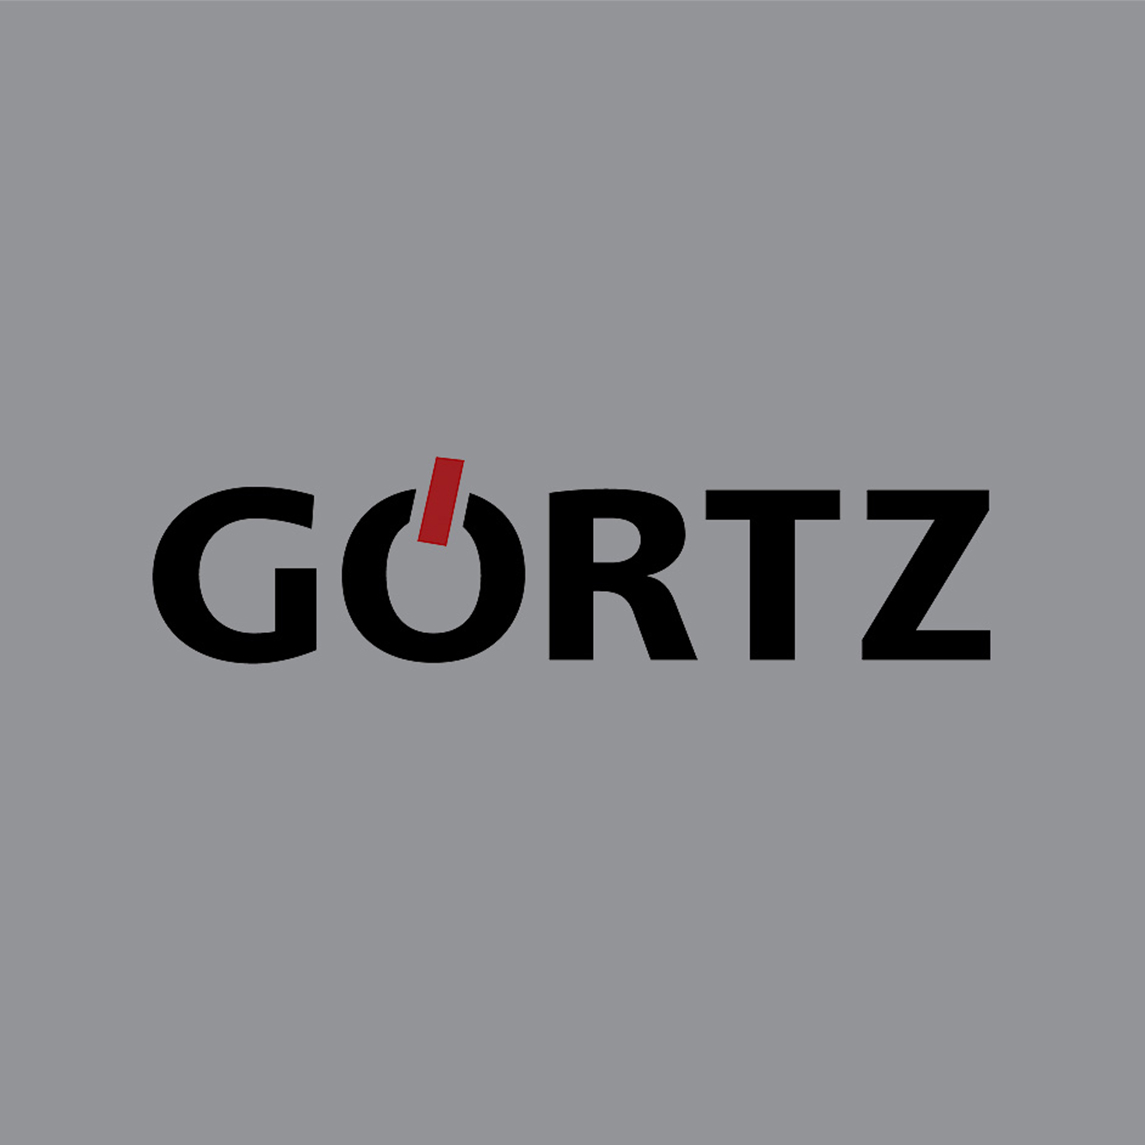 Wacom for Business Retail Service esignature Goertz